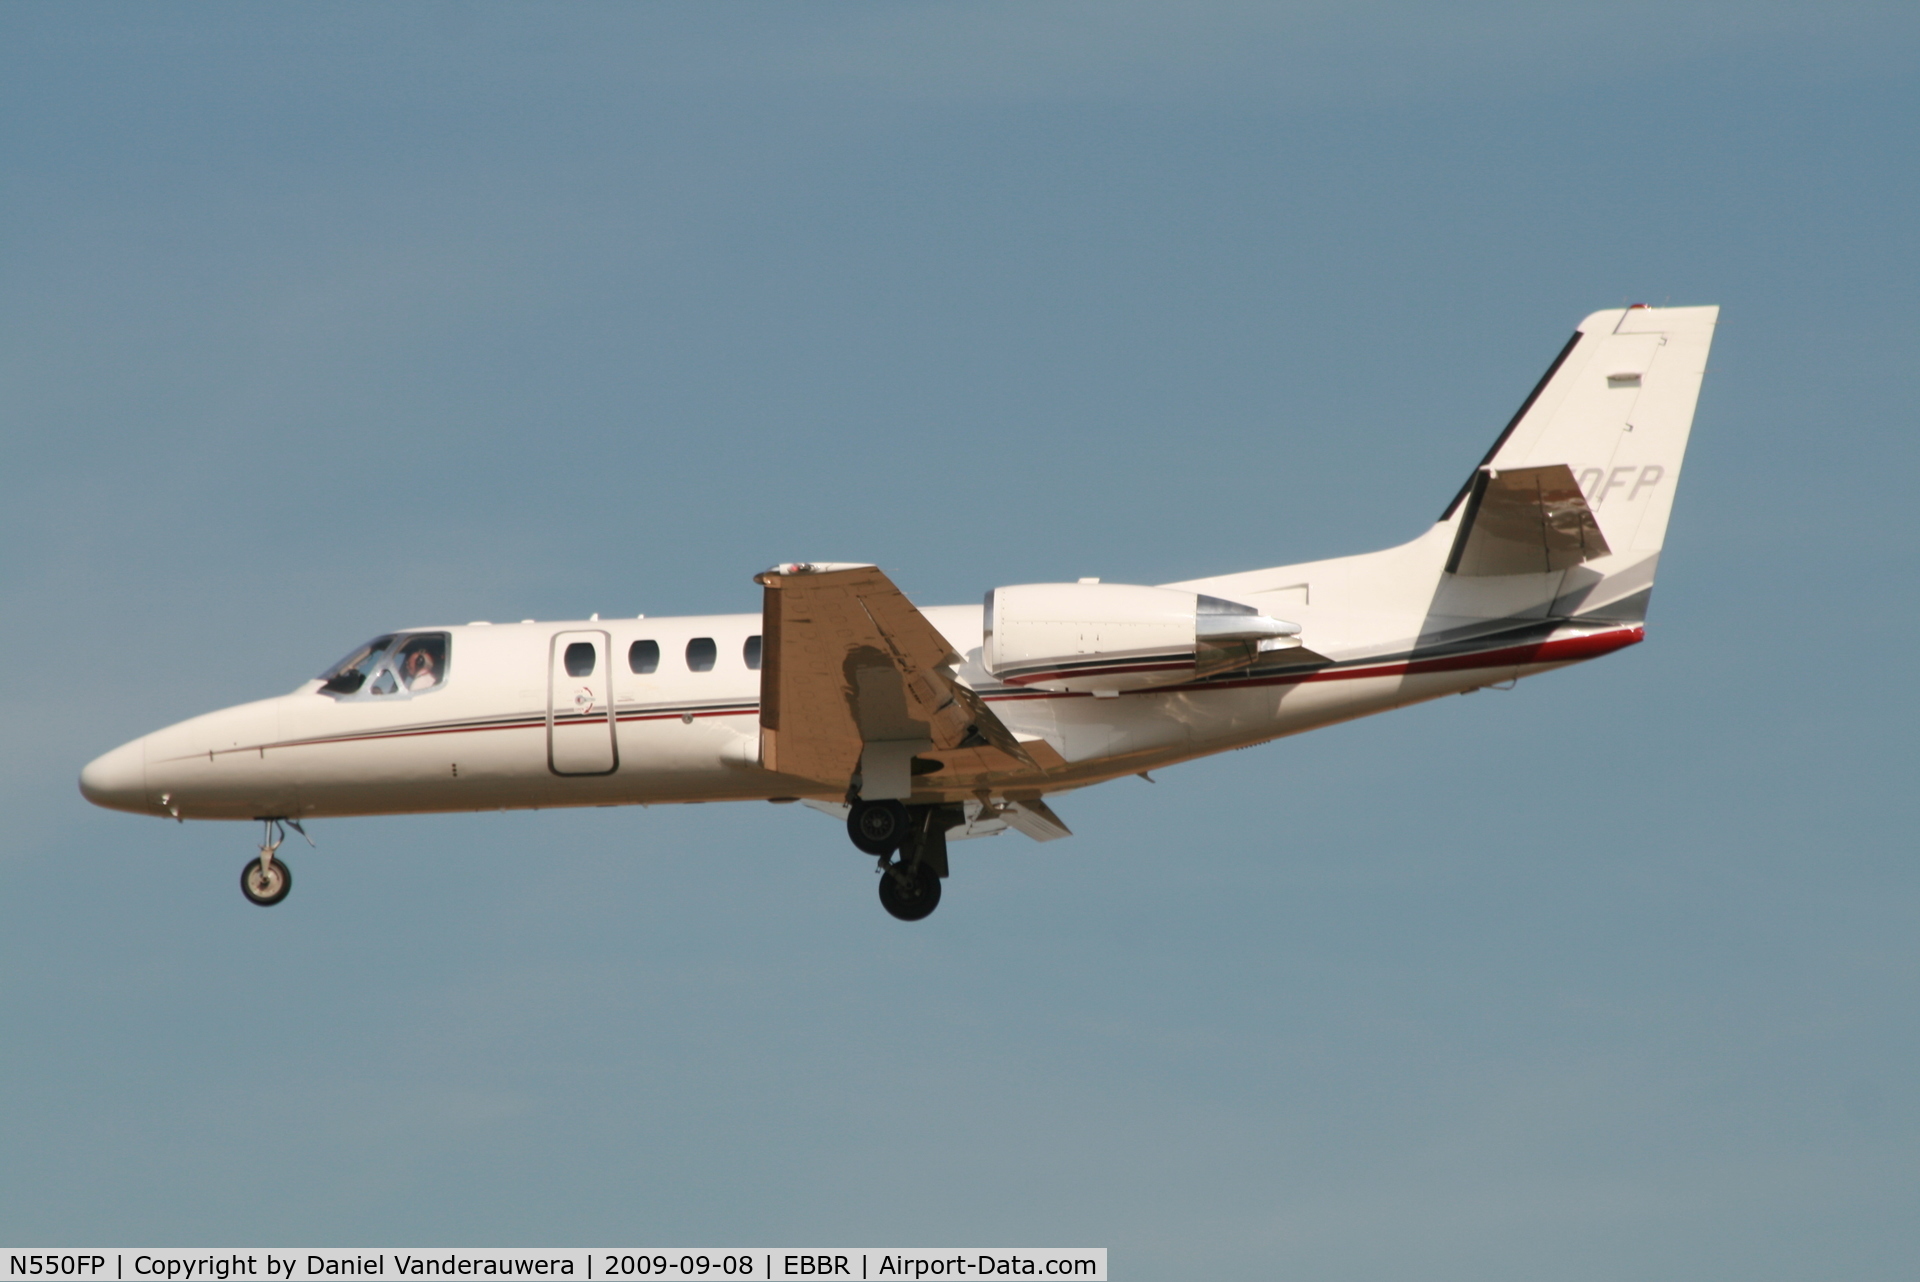 N550FP, 2002 Cessna 550 C/N 550-1024, descending to rwy 25L